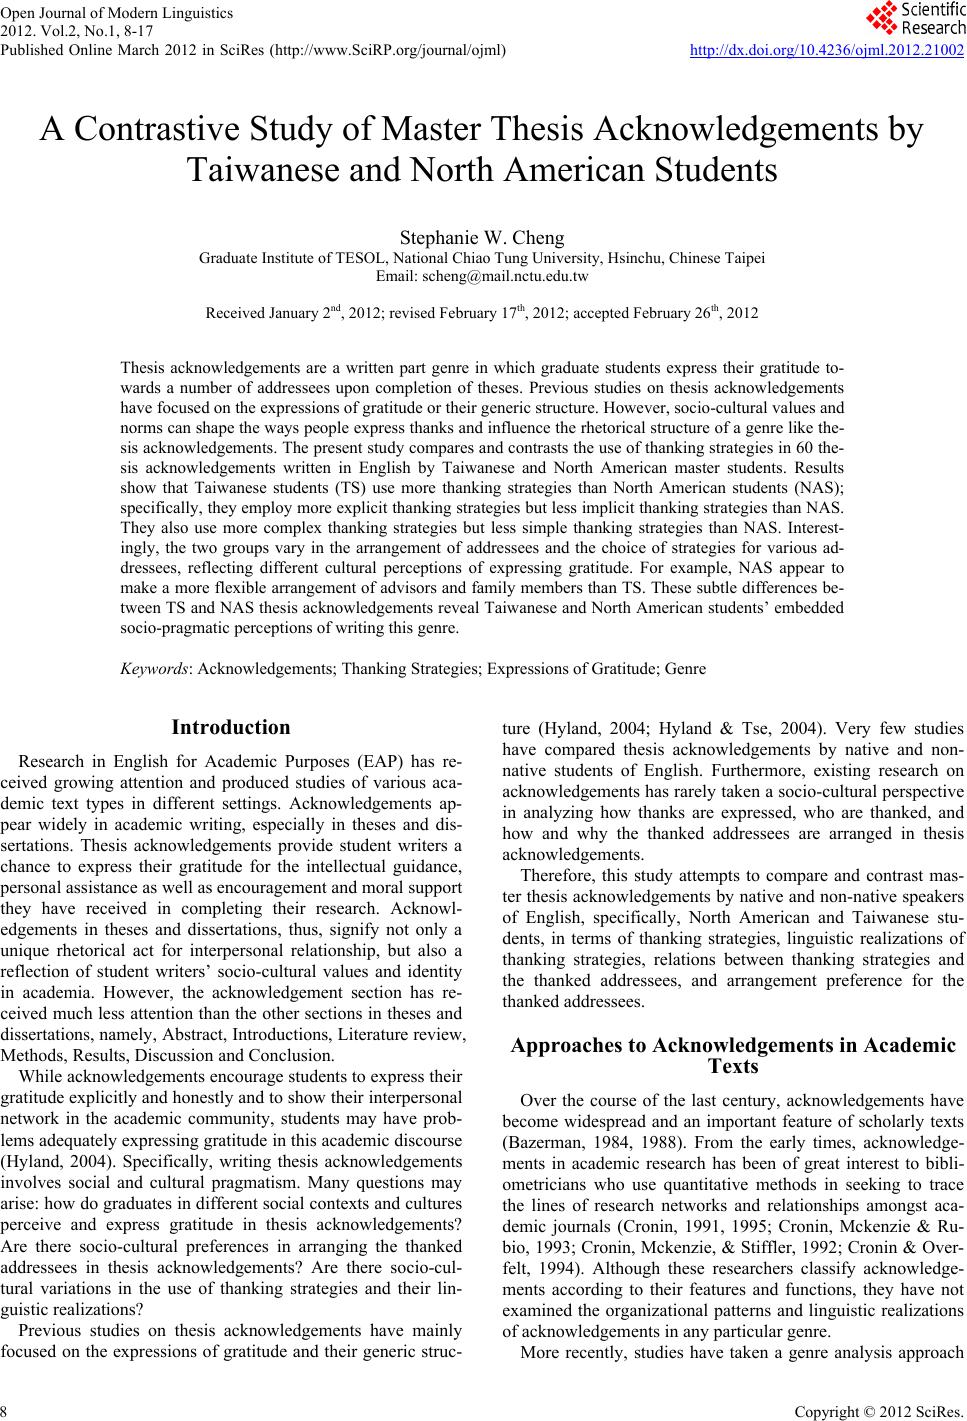 Thesis paper sample pdf